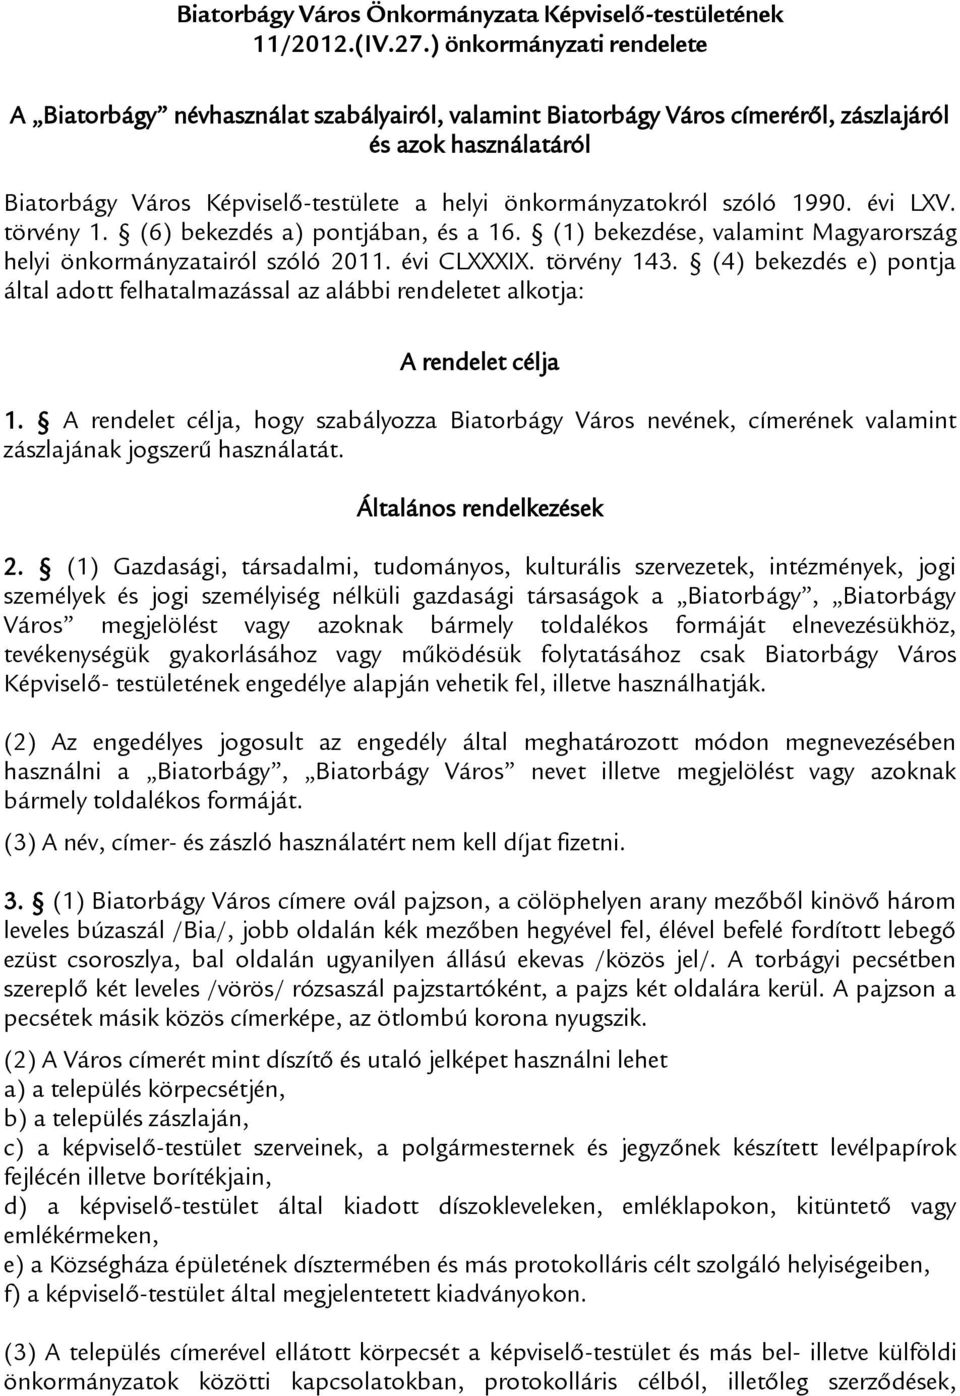 szóló 1990. évi LXV. törvény 1. (6) bekezdés a) pontjában, és a 16. (1) bekezdése, valamint Magyarország helyi önkormányzatairól szóló 2011. évi CLXXXIX. törvény 143.